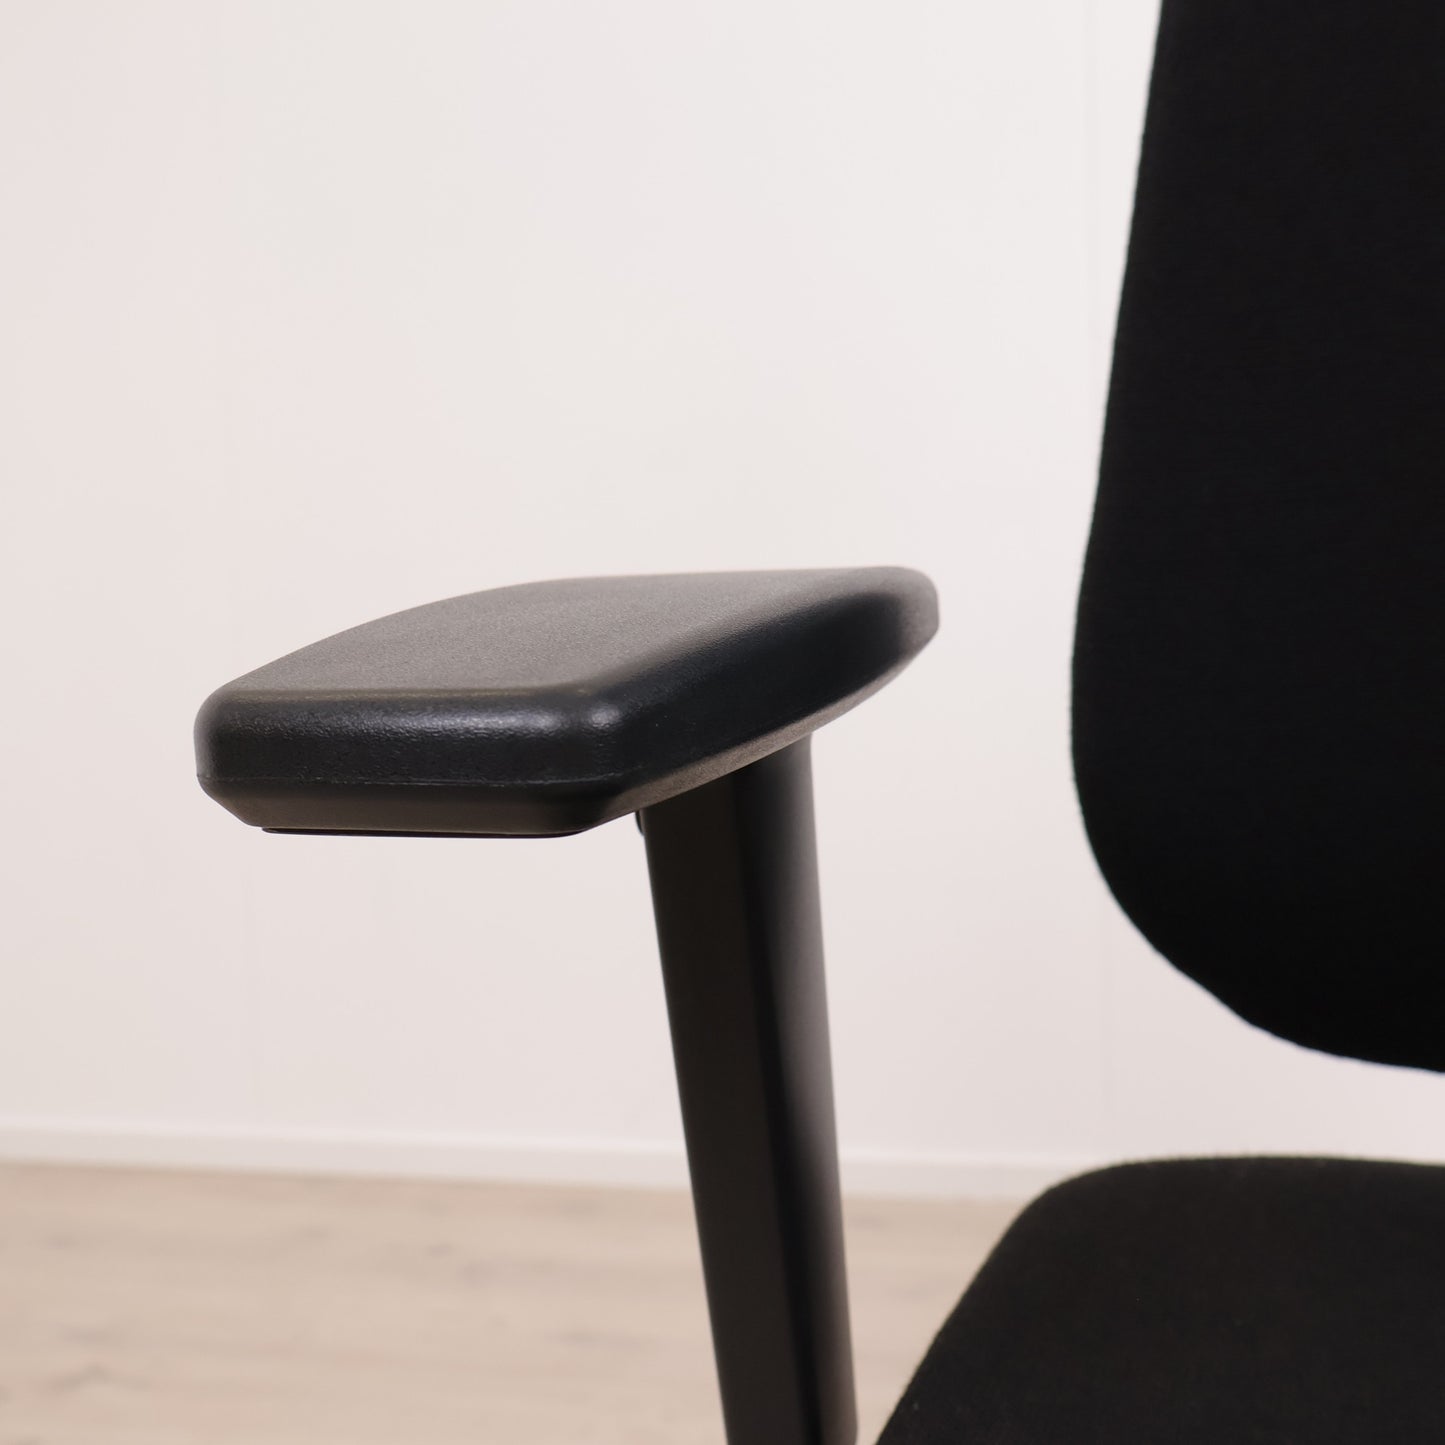 Nyrenset | RH 839 helsort kontorstol med høy rygg nakkestøtte